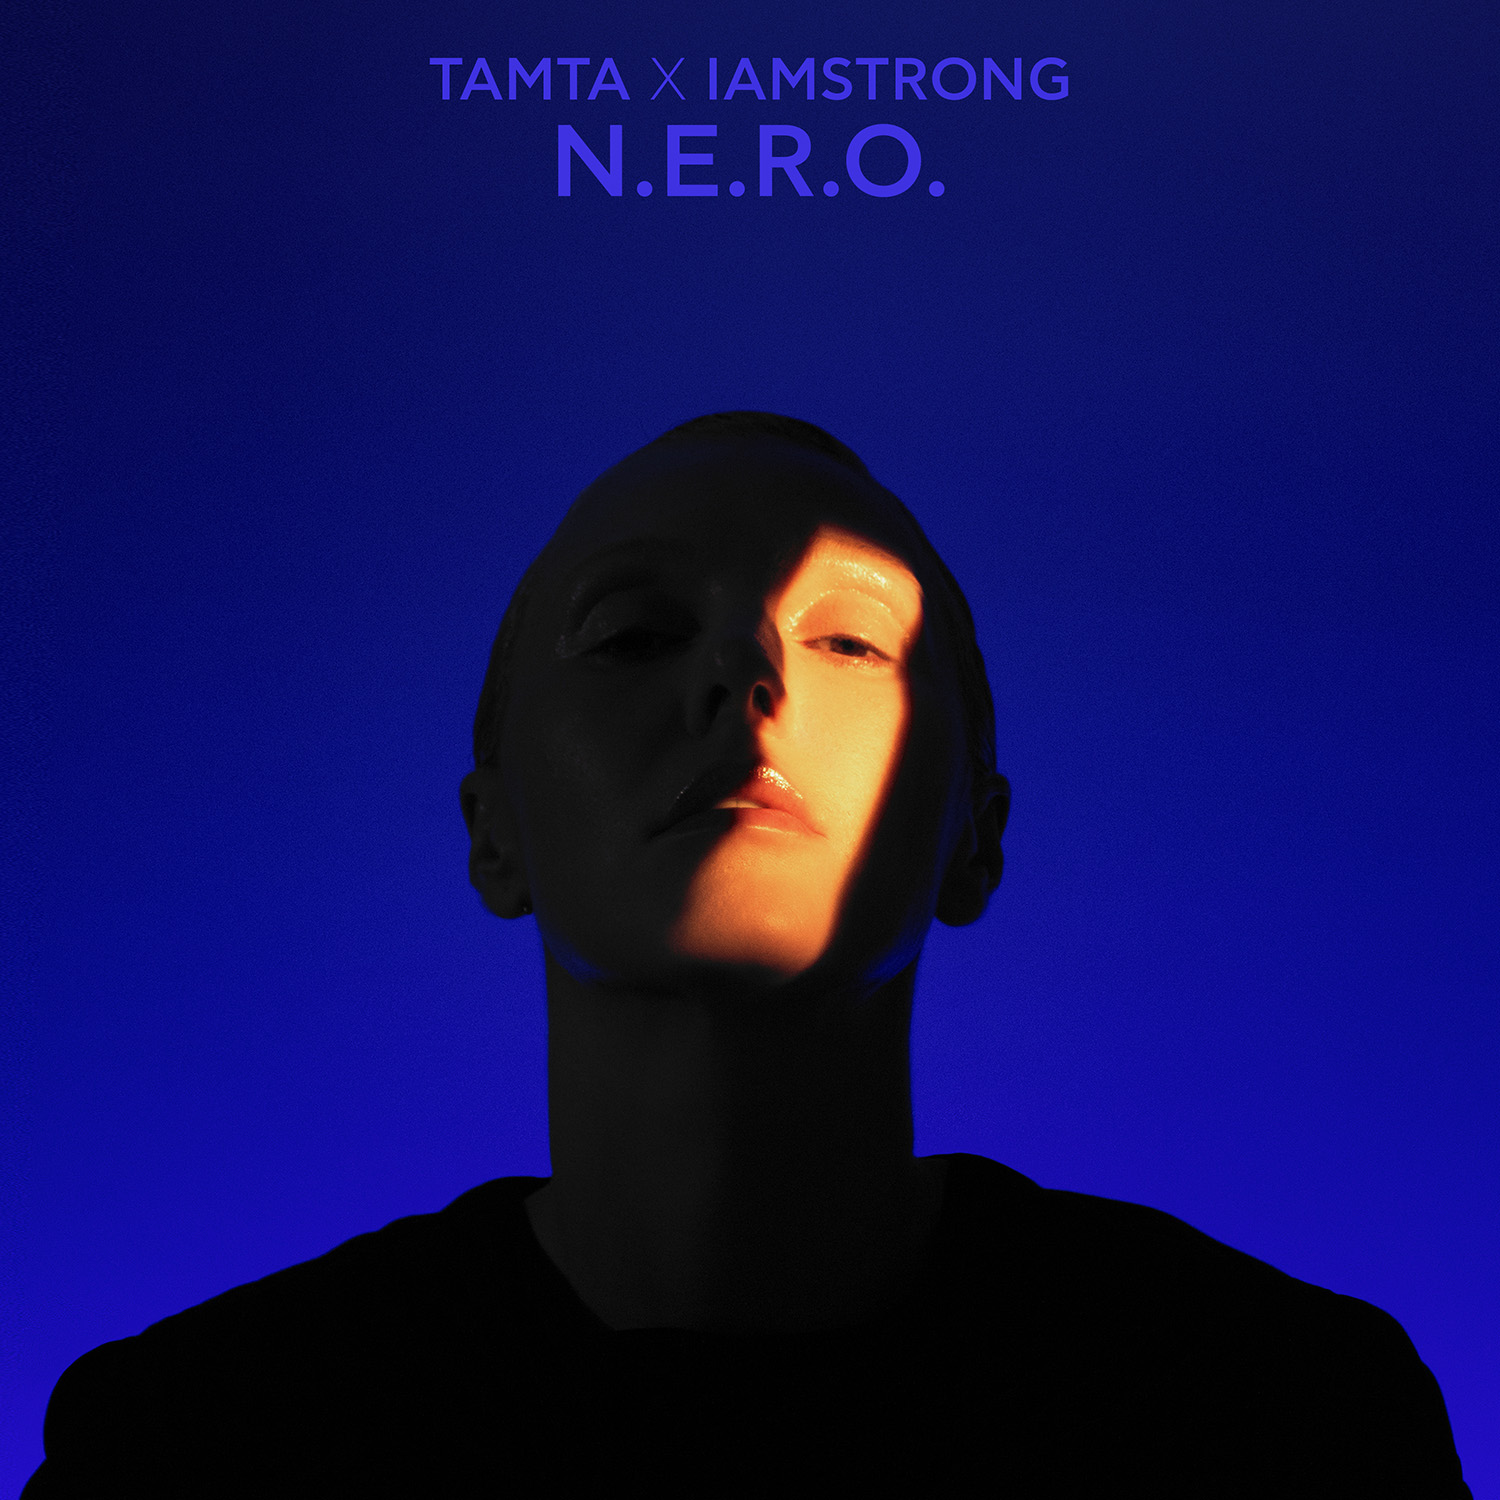 ΤΑΜΤΑ x IAMSTRONG – “N.E.R.O.” | Νέο Τραγούδι